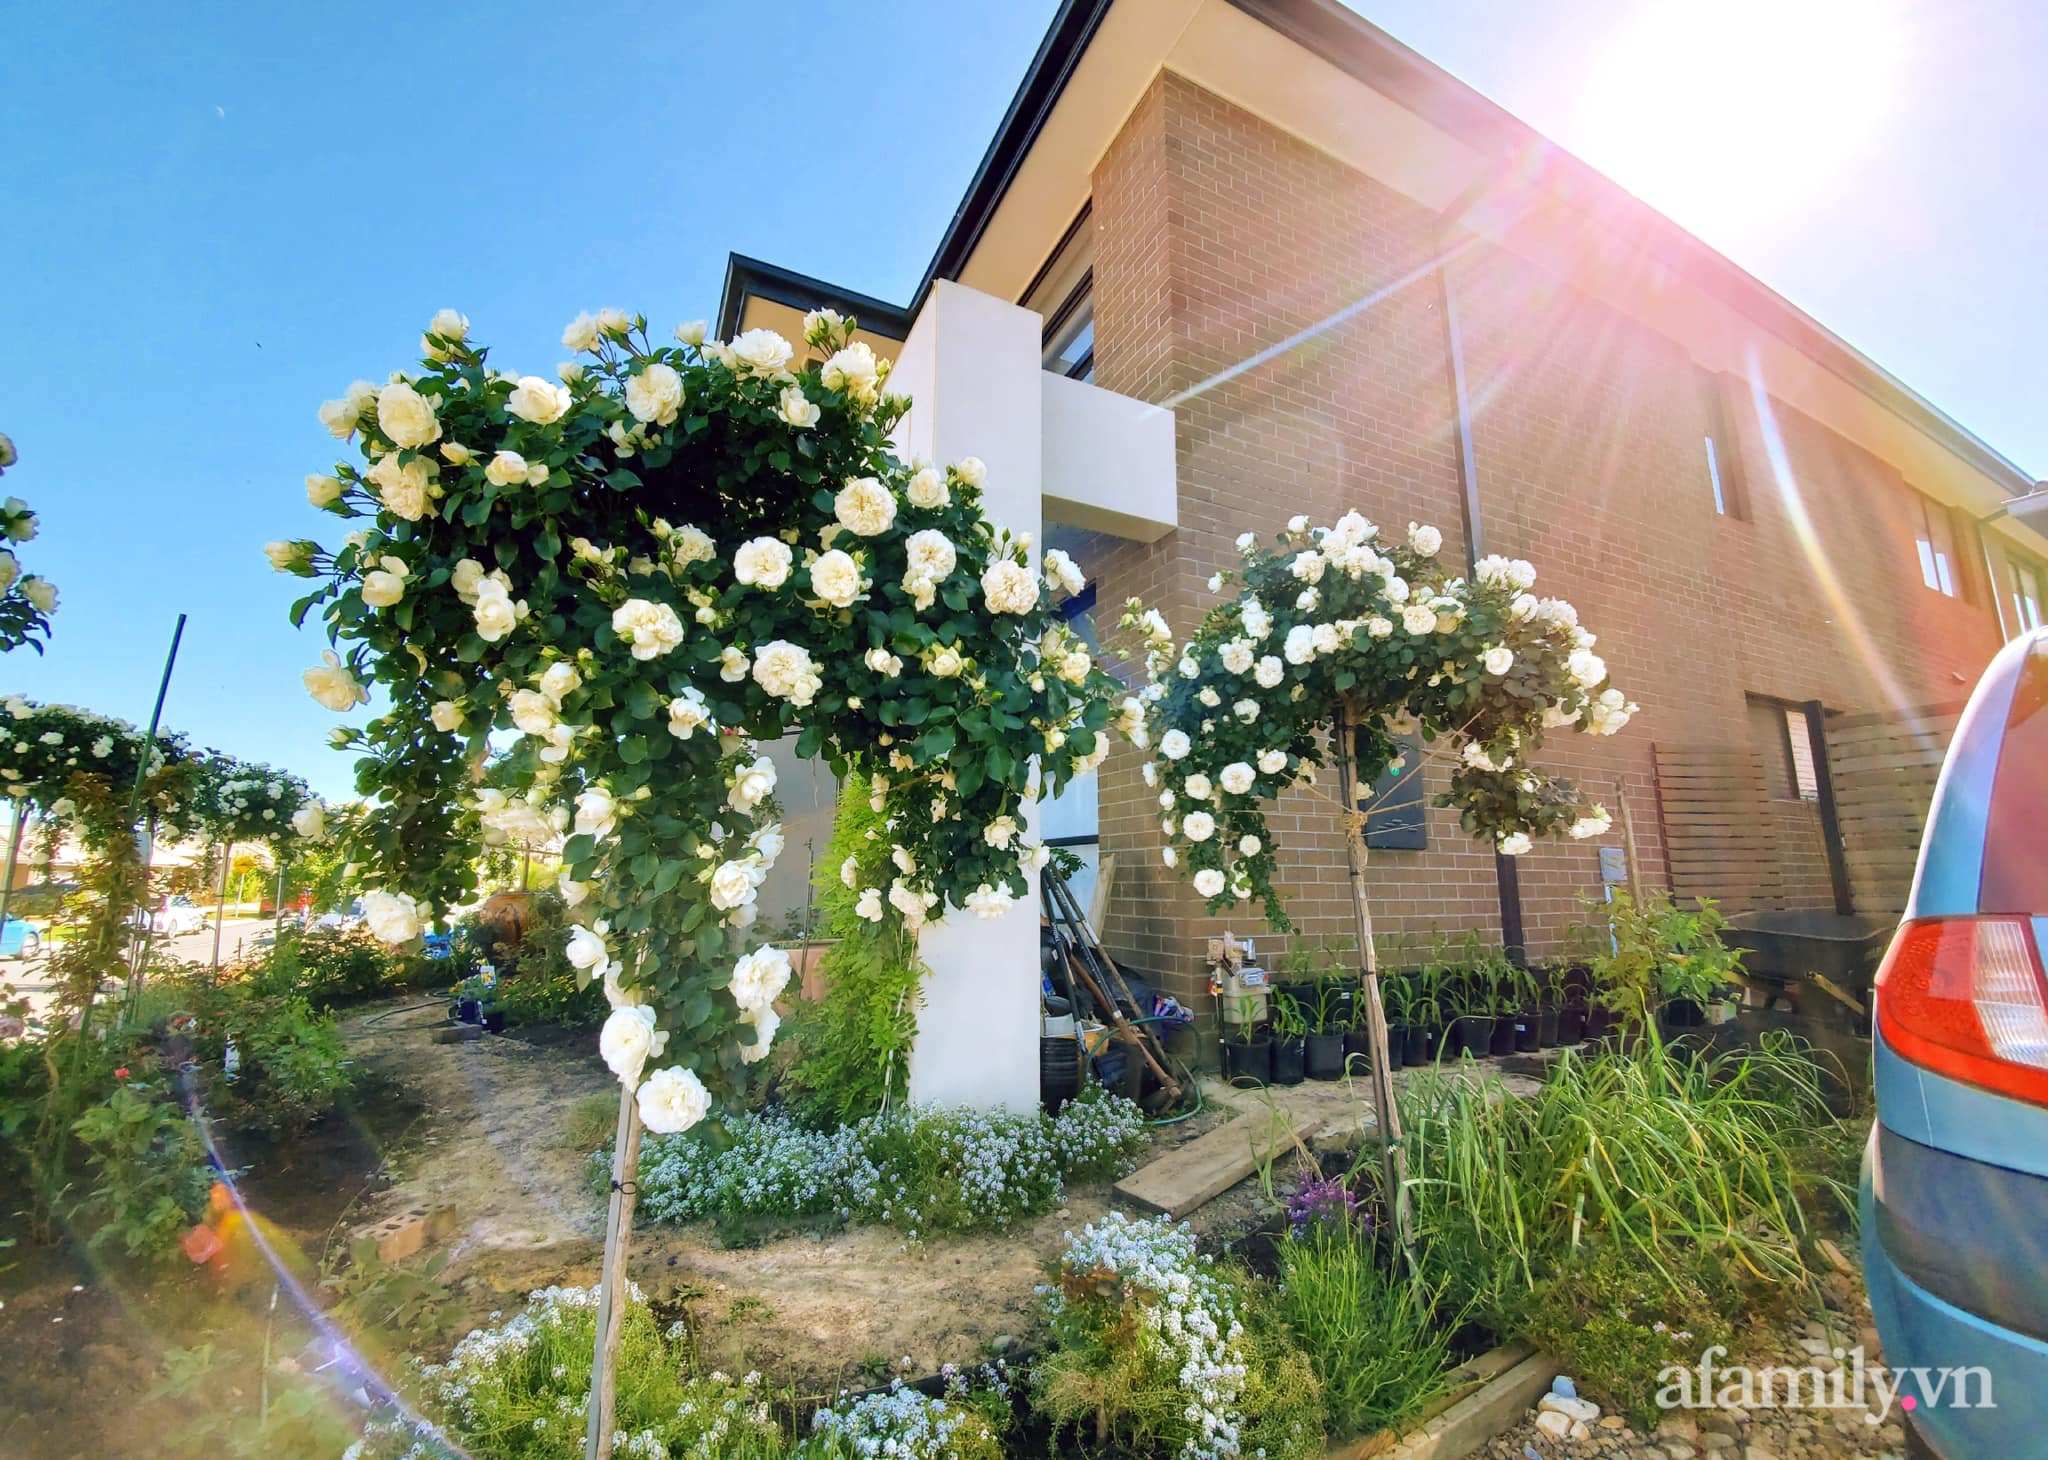 Vườn hồng 250m² ngát hương rực rỡ sắc màu đẹp như cổ tích của mẹ Việt ở Úc - Ảnh 14.